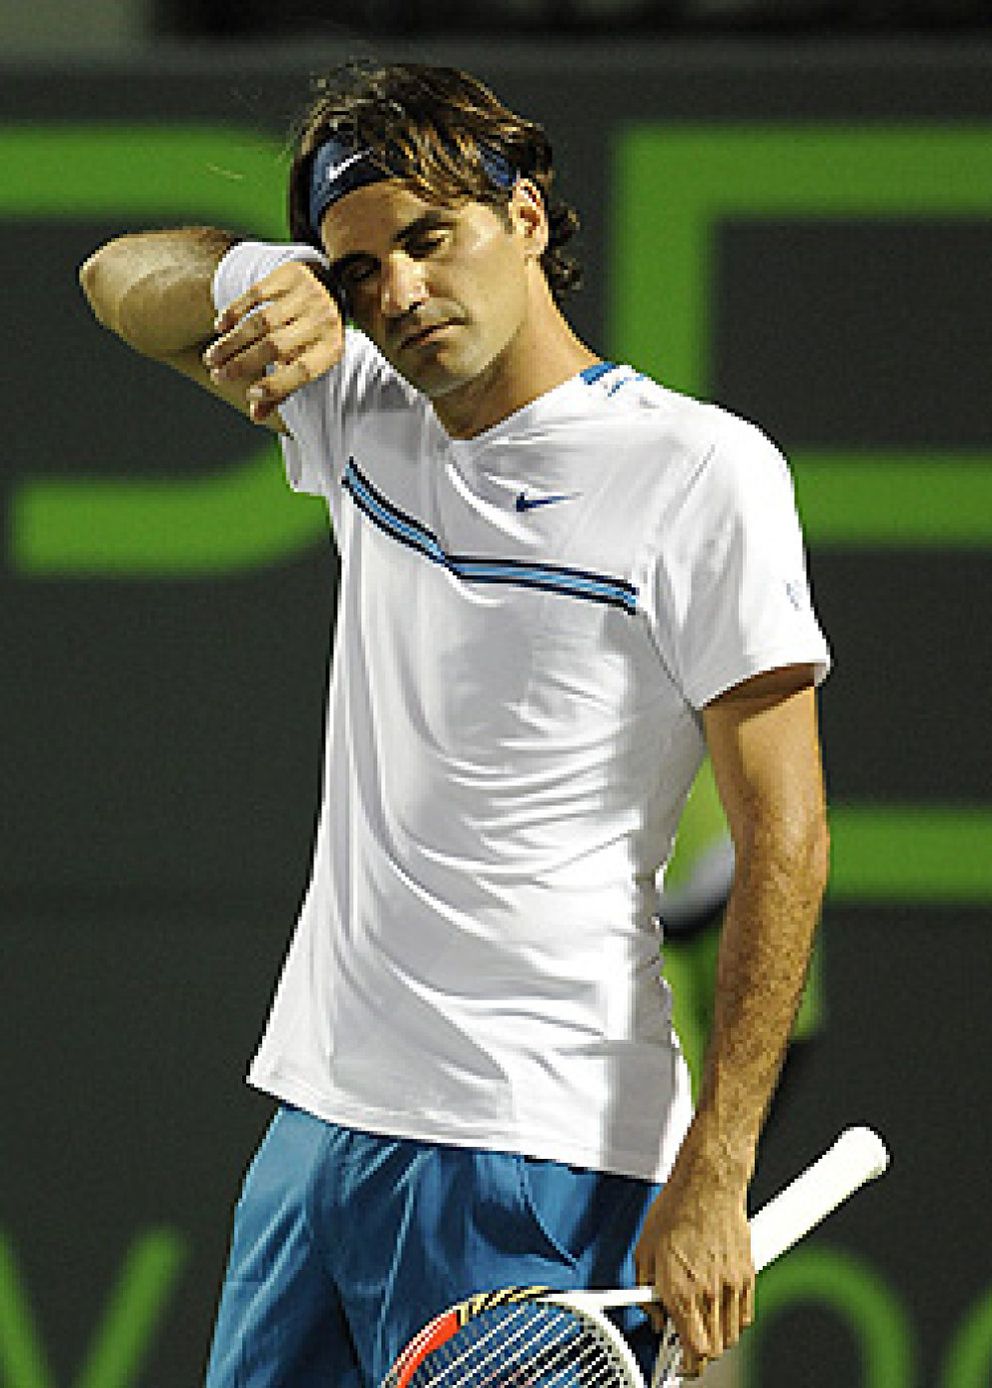 Foto: Andy Roddick protagoniza la campanada en Miami al eliminar a un desconocido Federer